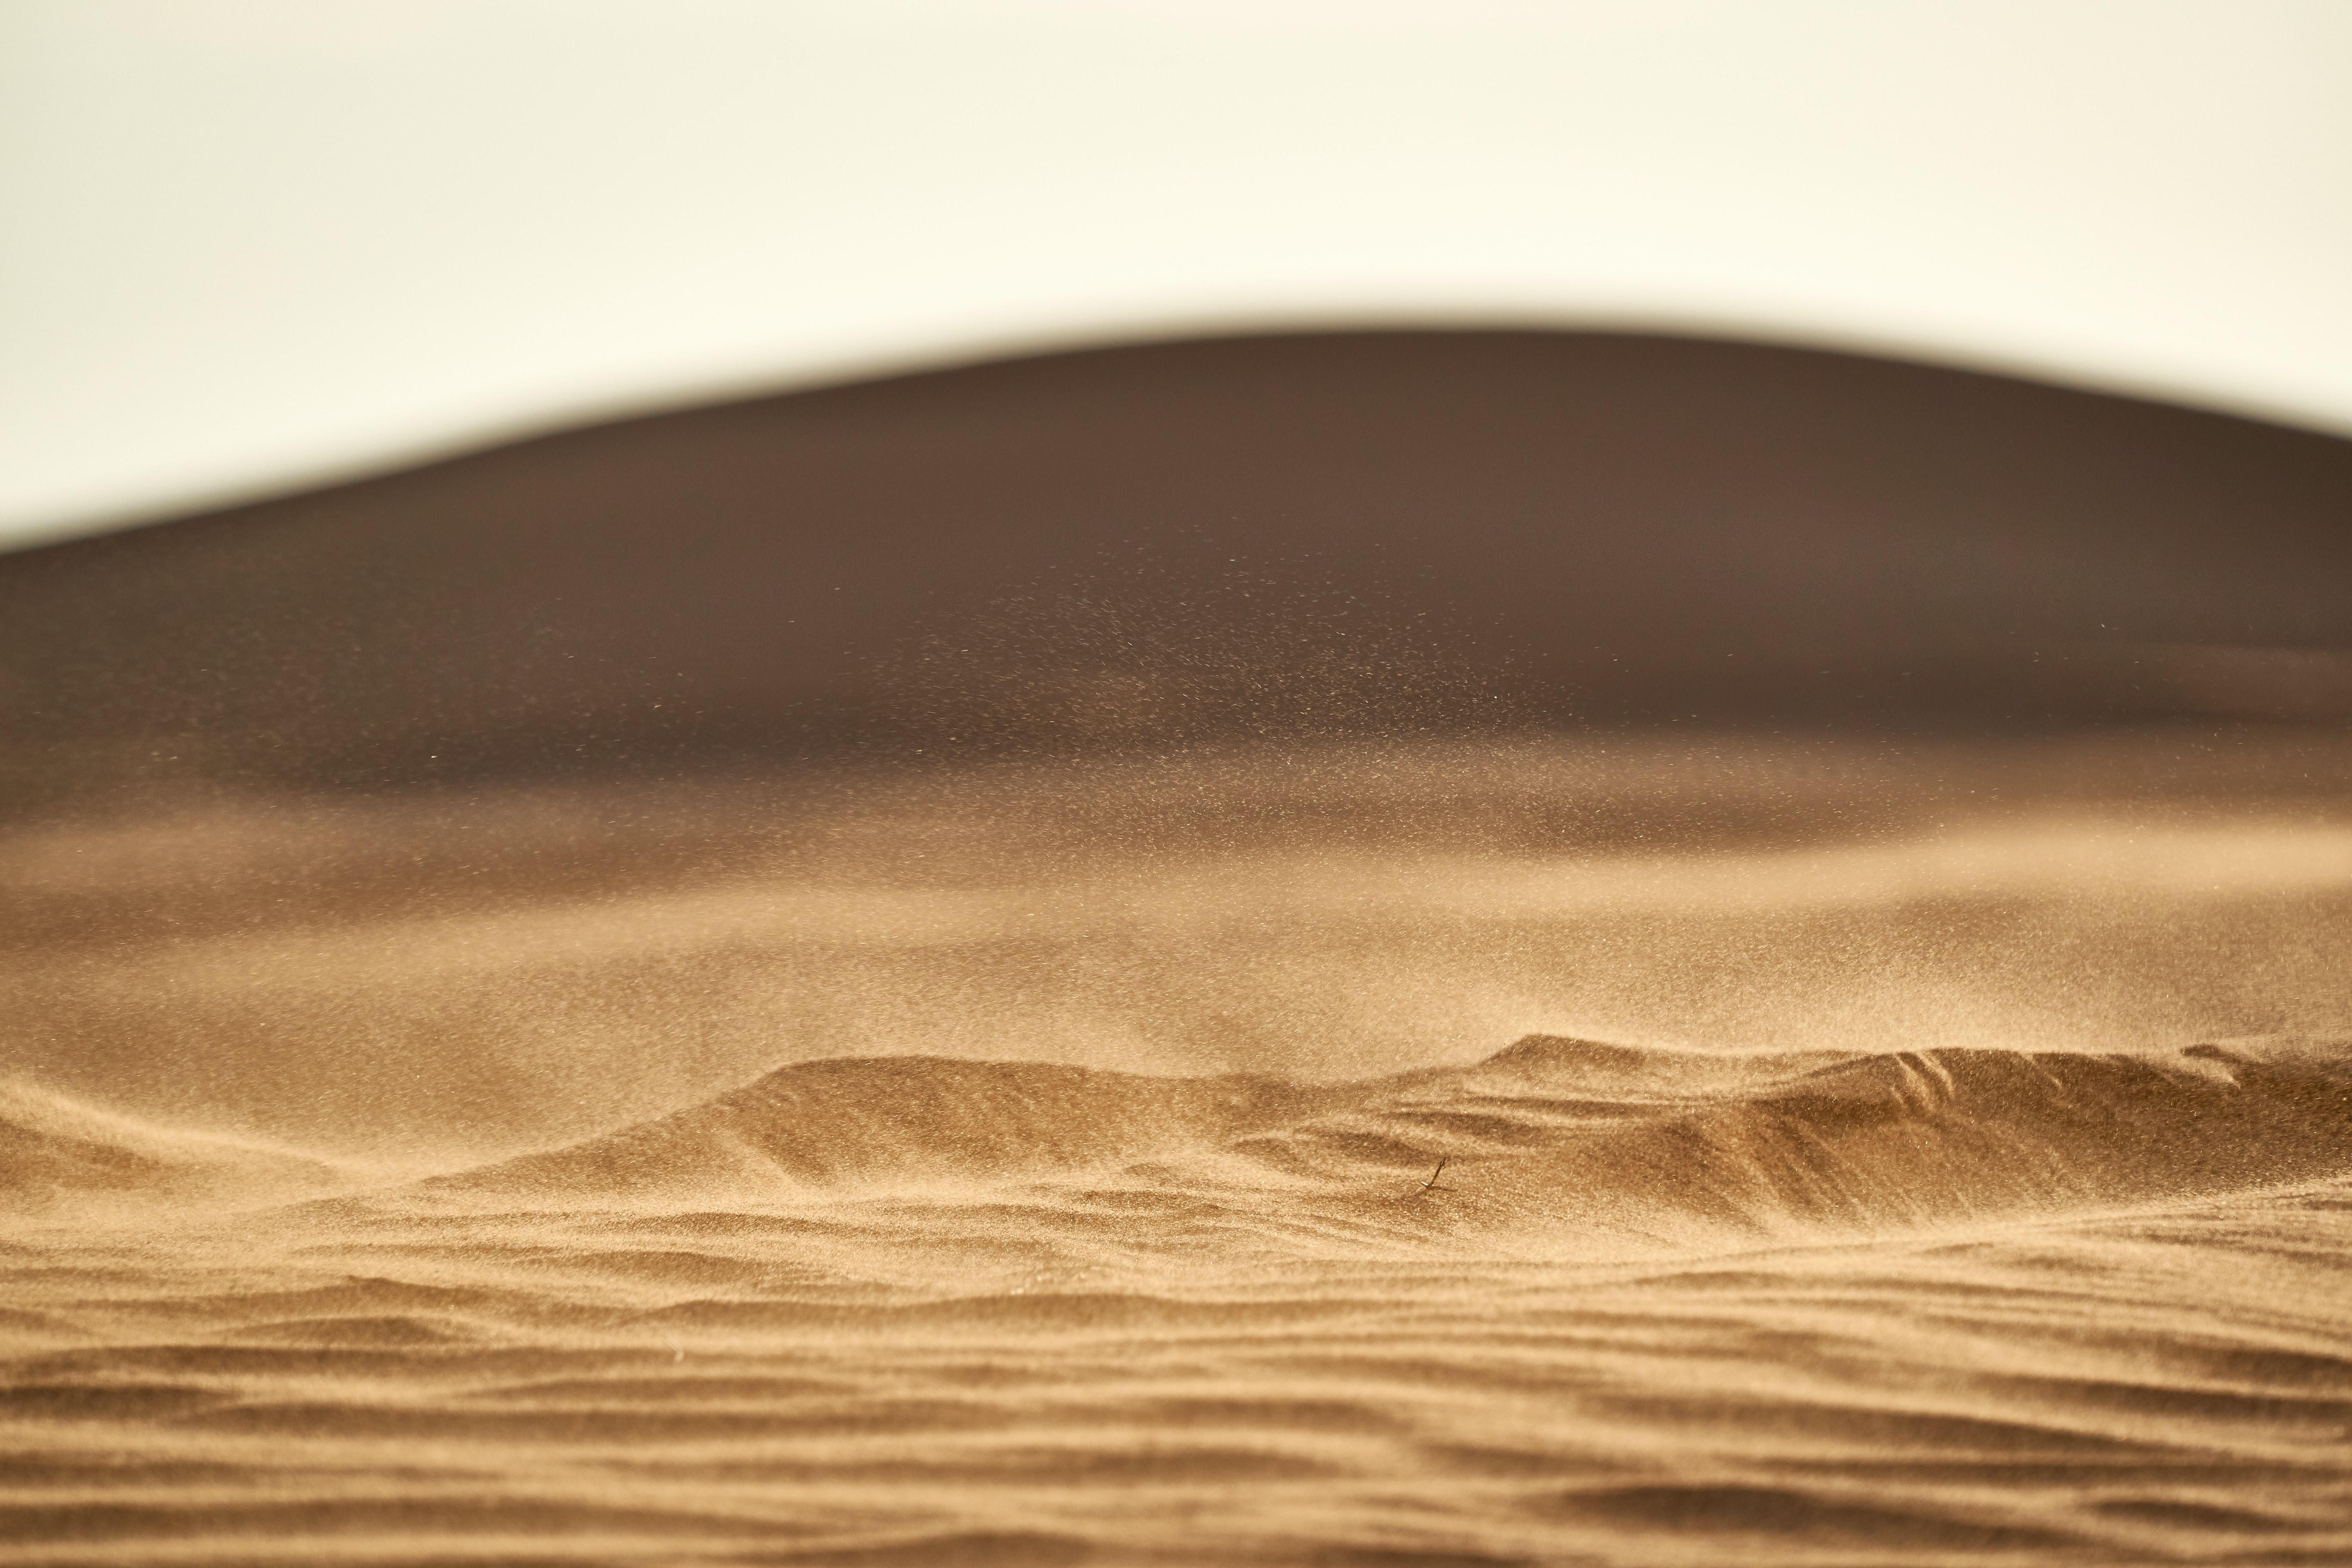 Піску у світі стає менше: в ООН застерігають про небезпечні наслідки